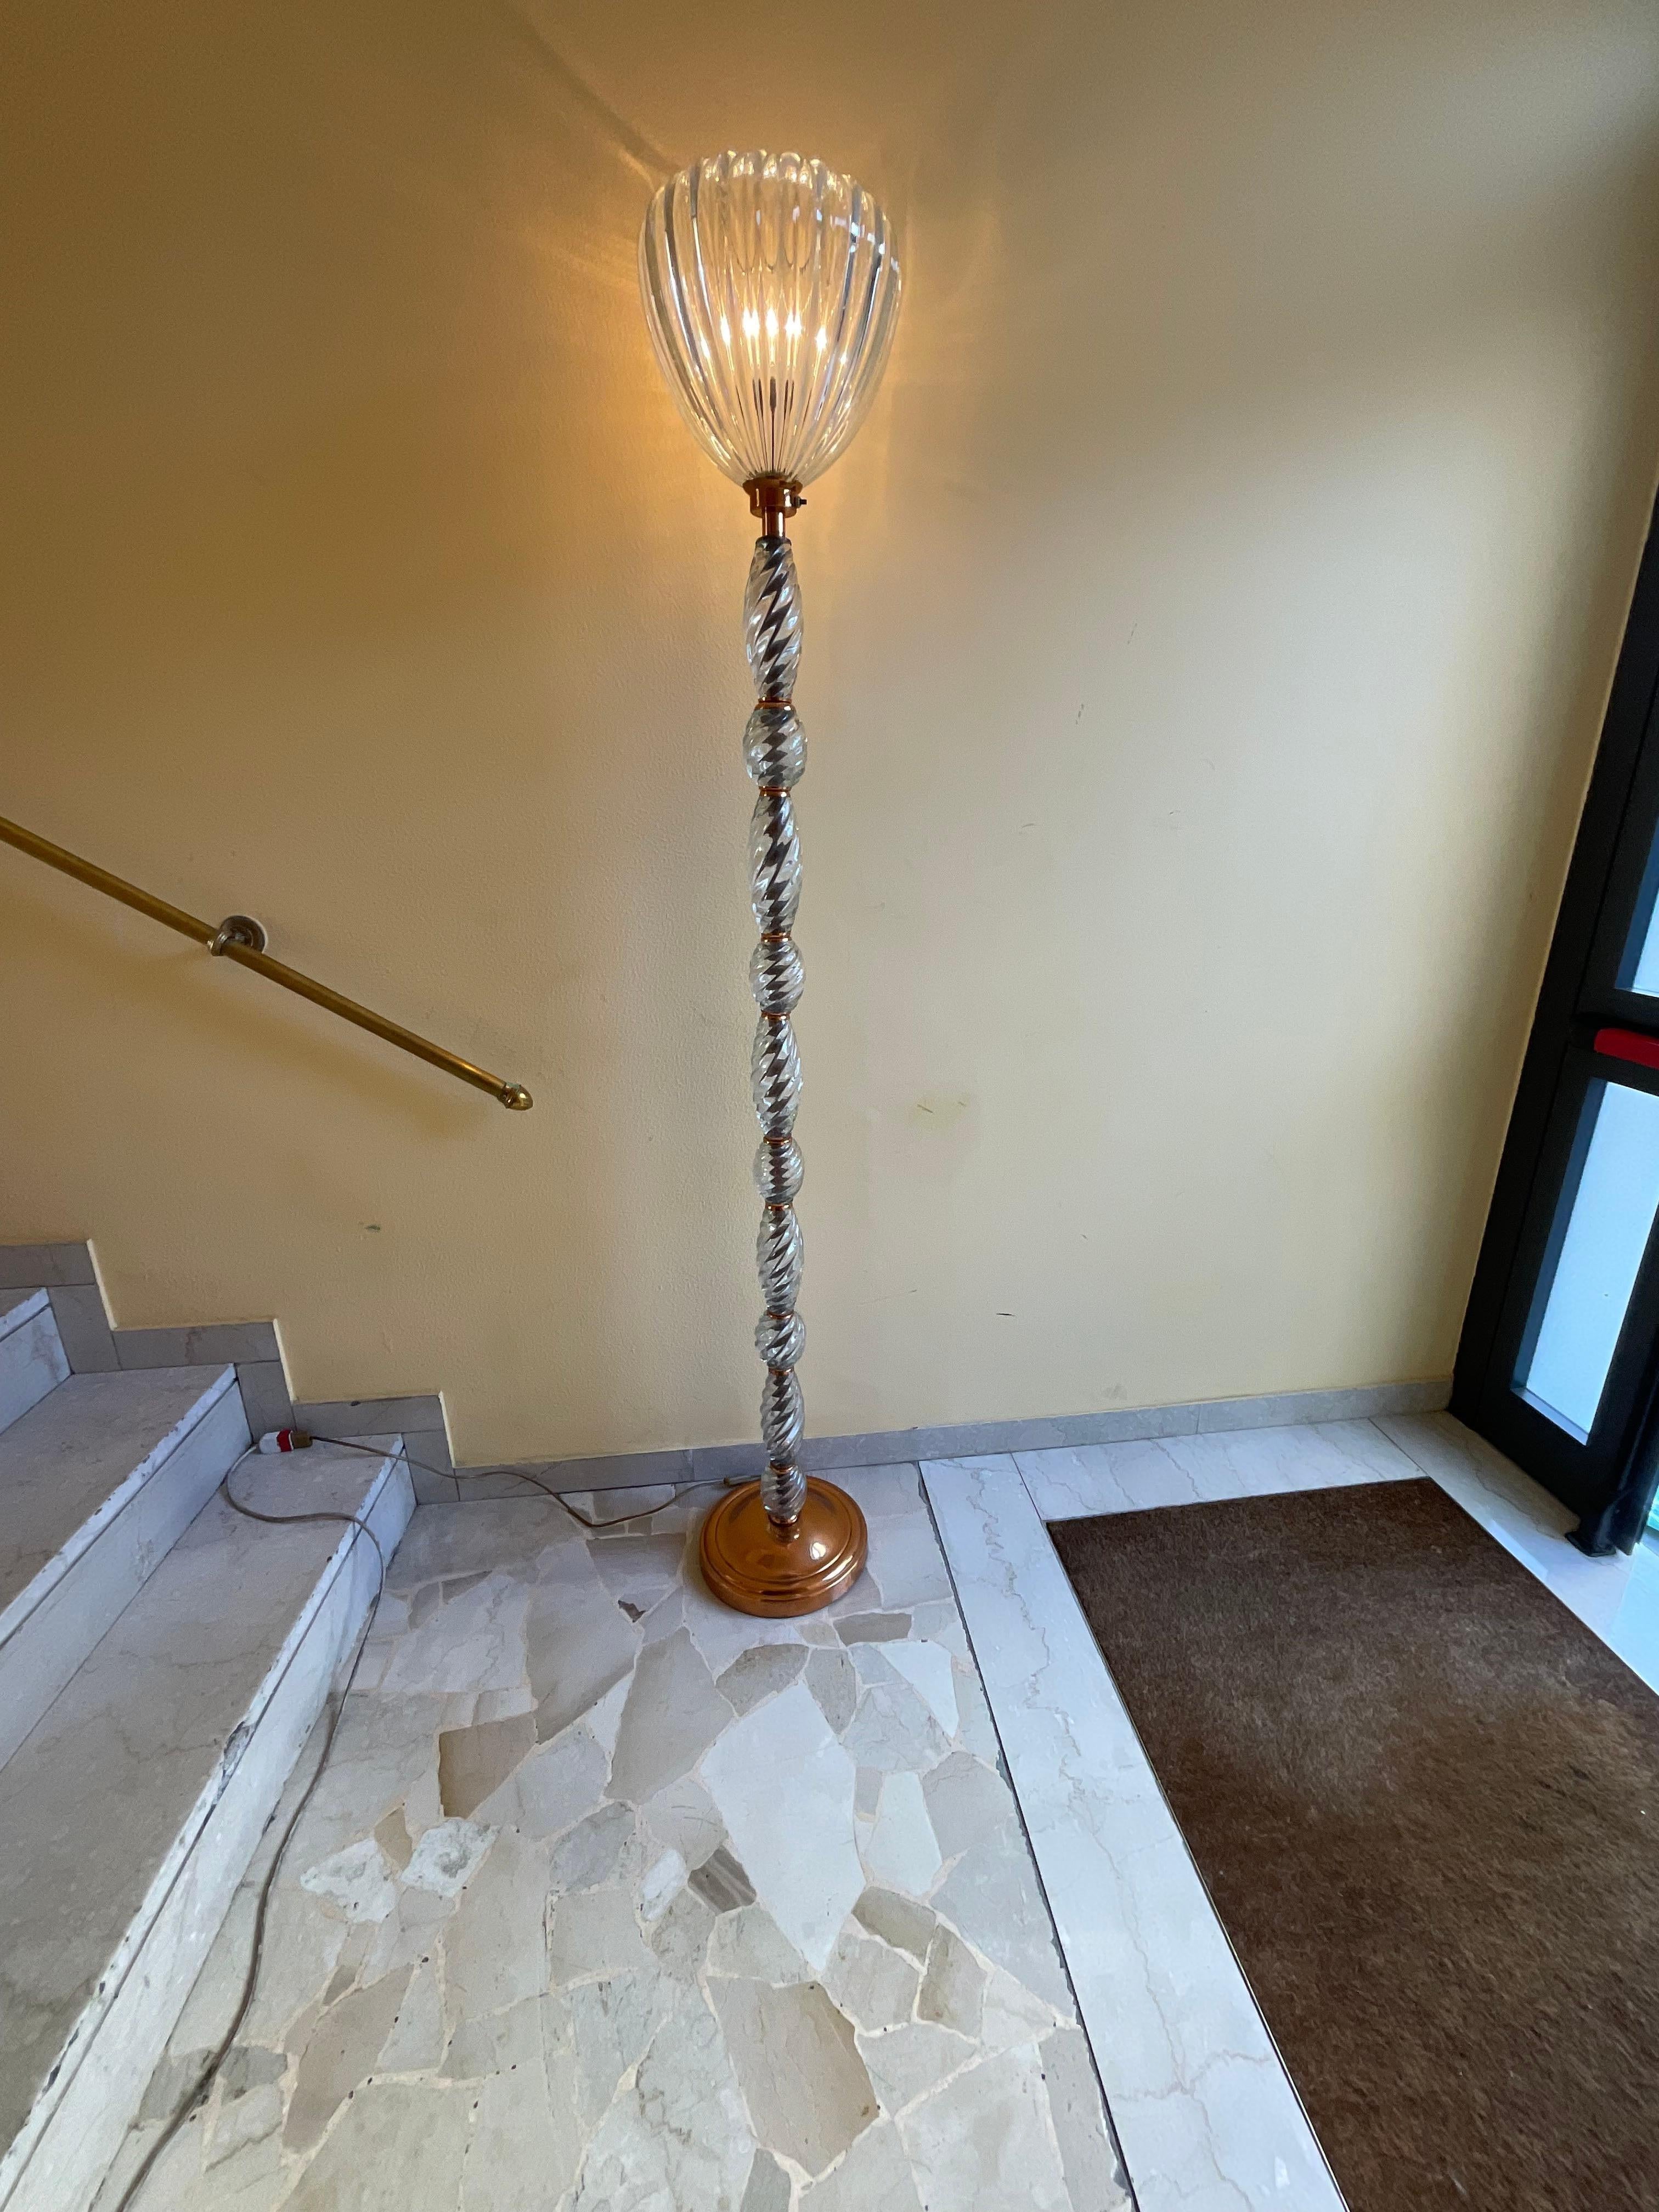 SEGUSO Murano - Rara lampada da terra in vetro di murano del 1940.
Perfetto stato , linea elegante e raffinata , sia per un arredamento moderno che antico.
